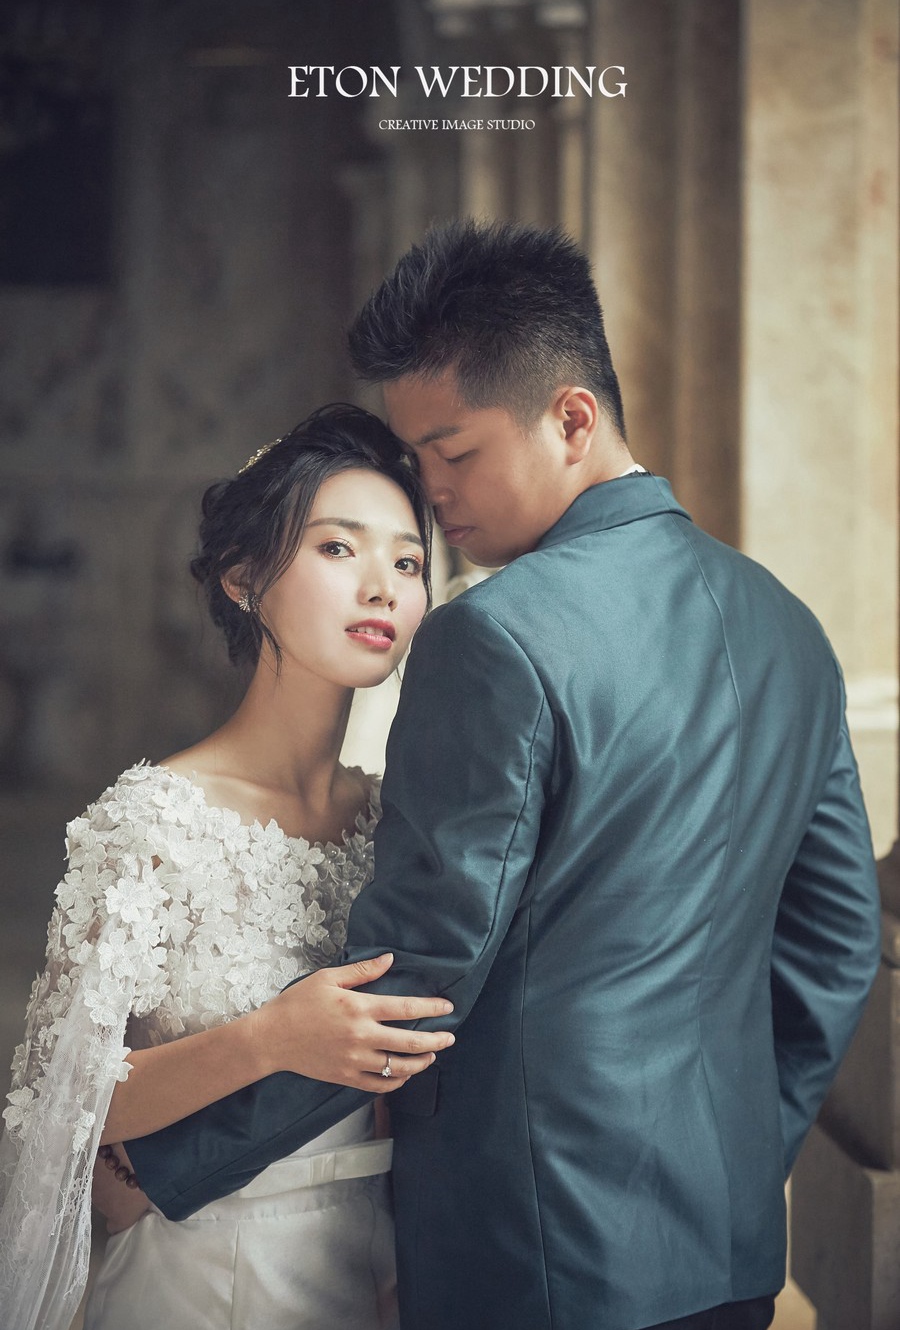 韓系婚紗造型,韓風婚紗照推薦,韓式婚紗推薦,韓系婚紗照風格